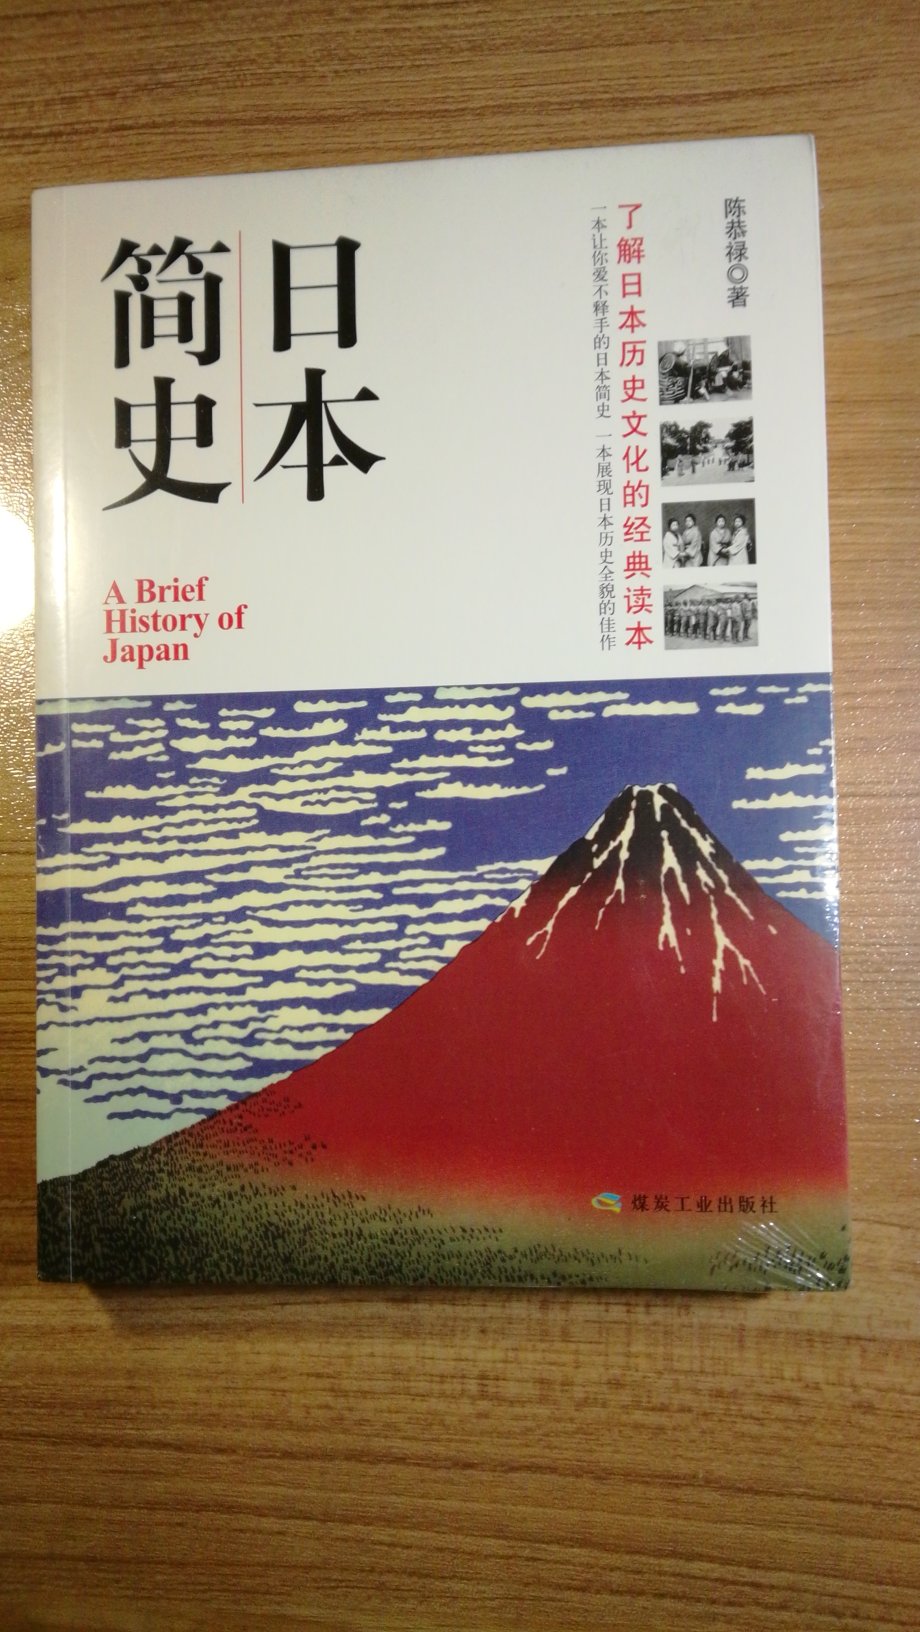 这本书质量不错，可读性强，内容从日本幕府统治时期到明治维新之后，只写了日本近代史。